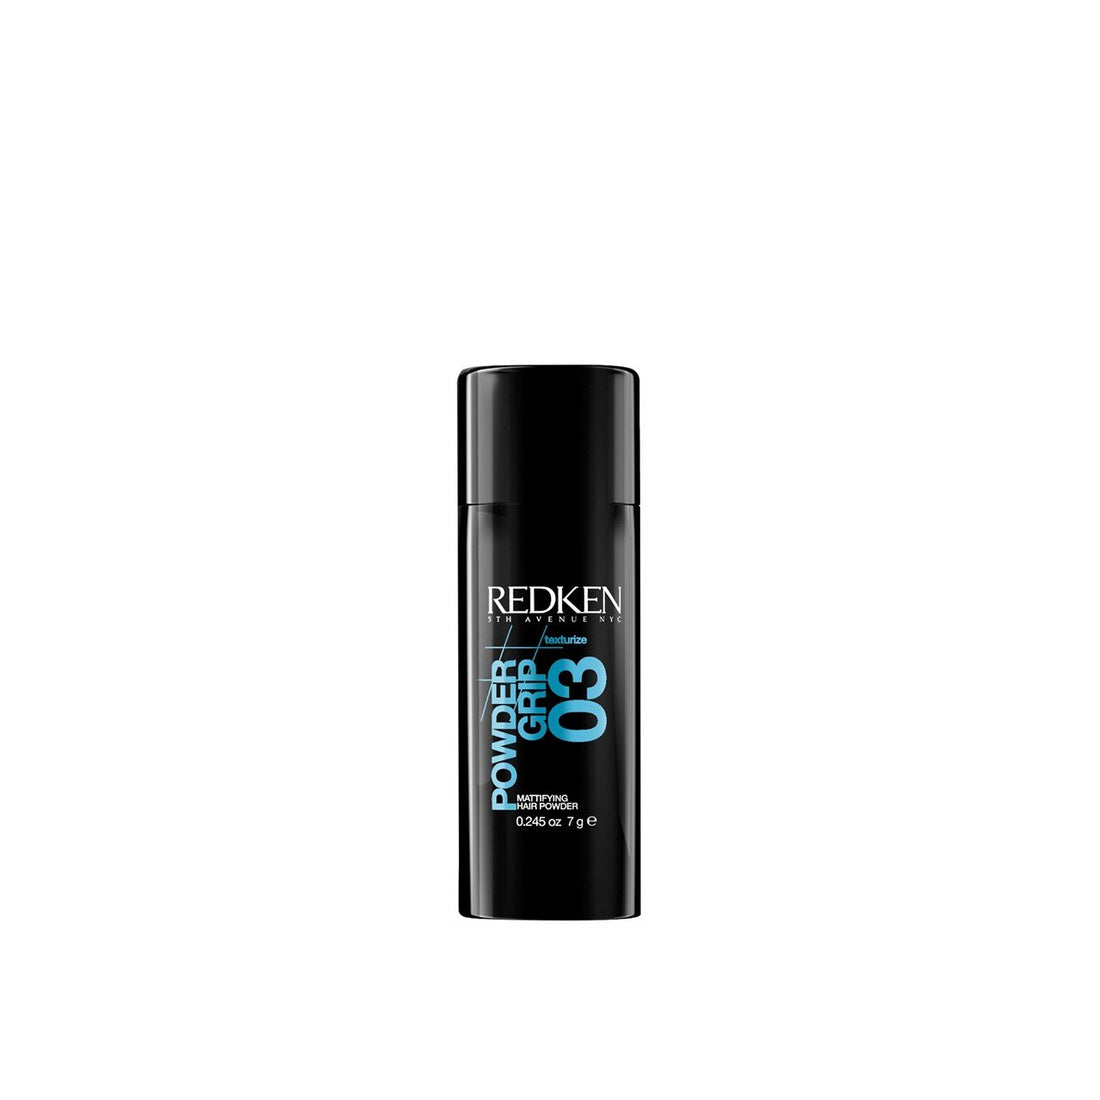 Redken Power Grip 03 Mattifying Hair Powder 7g (0.25oz)